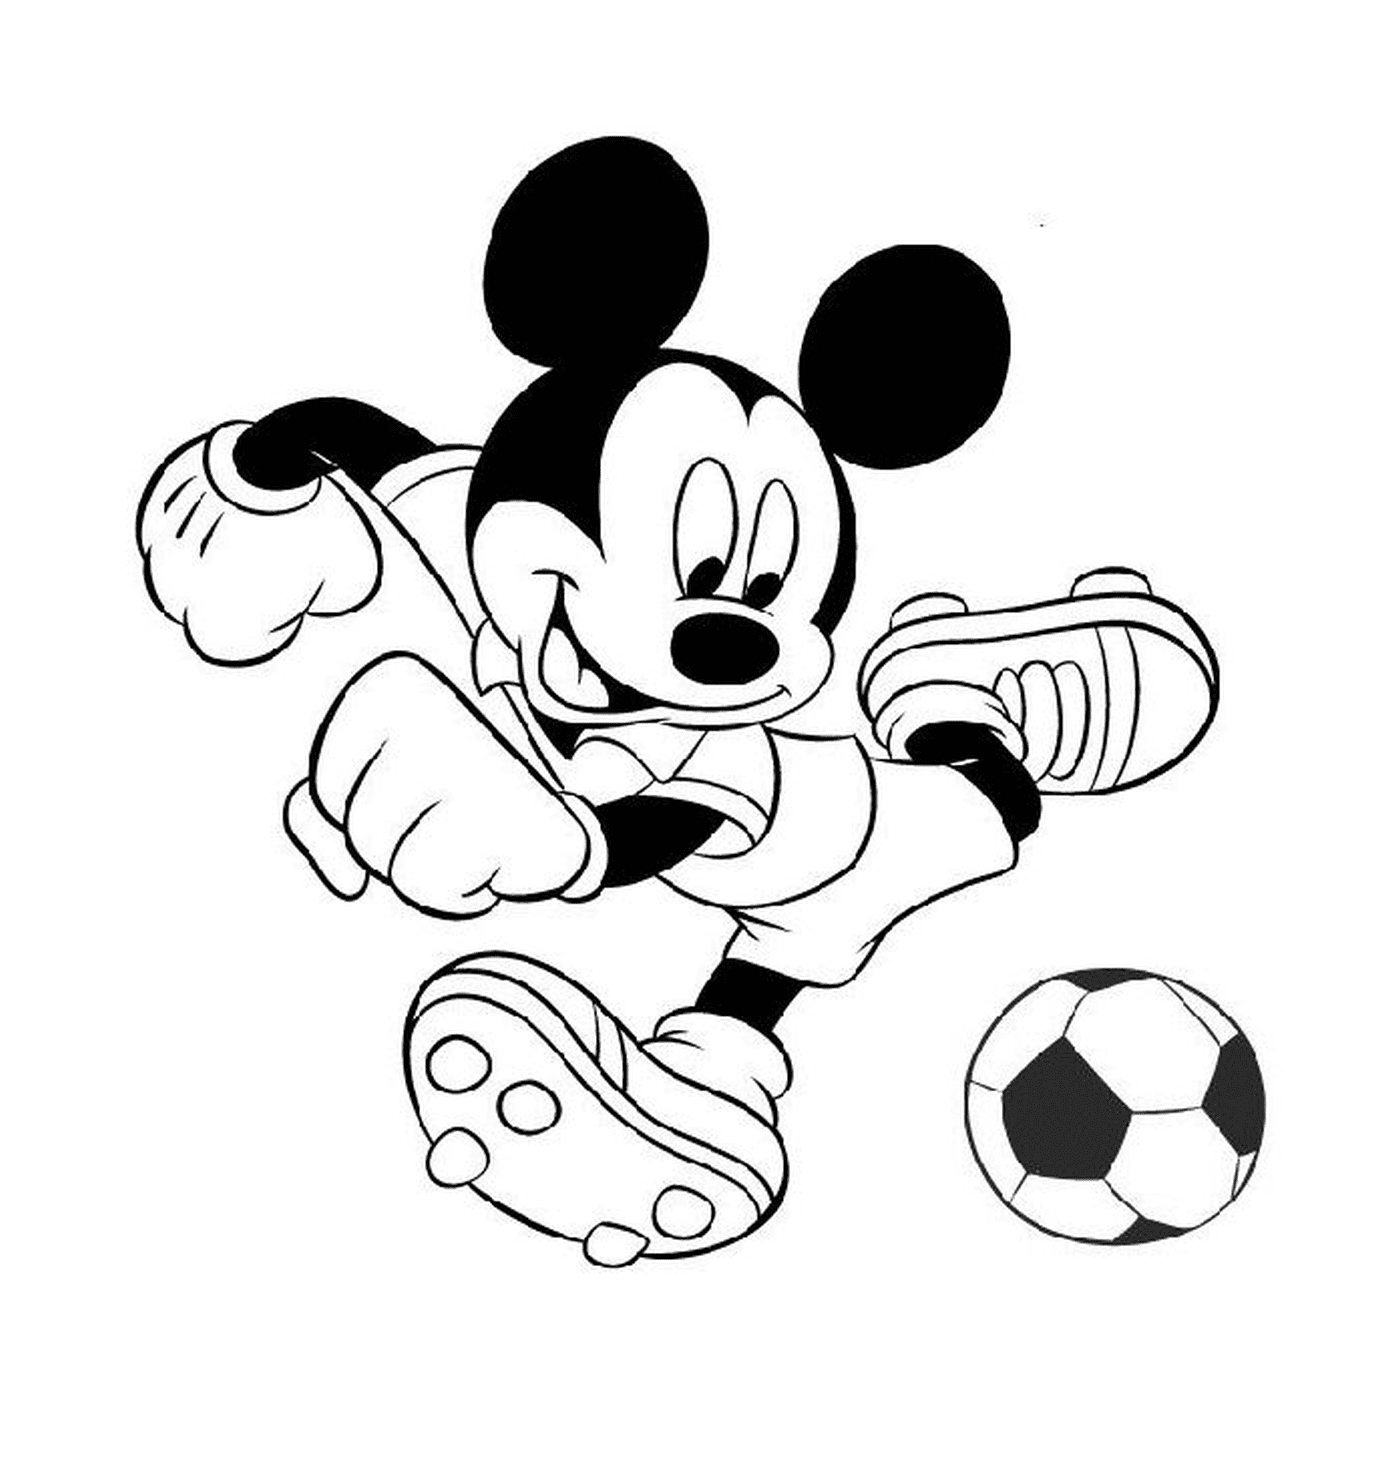  Микки Маус играет в футбол 